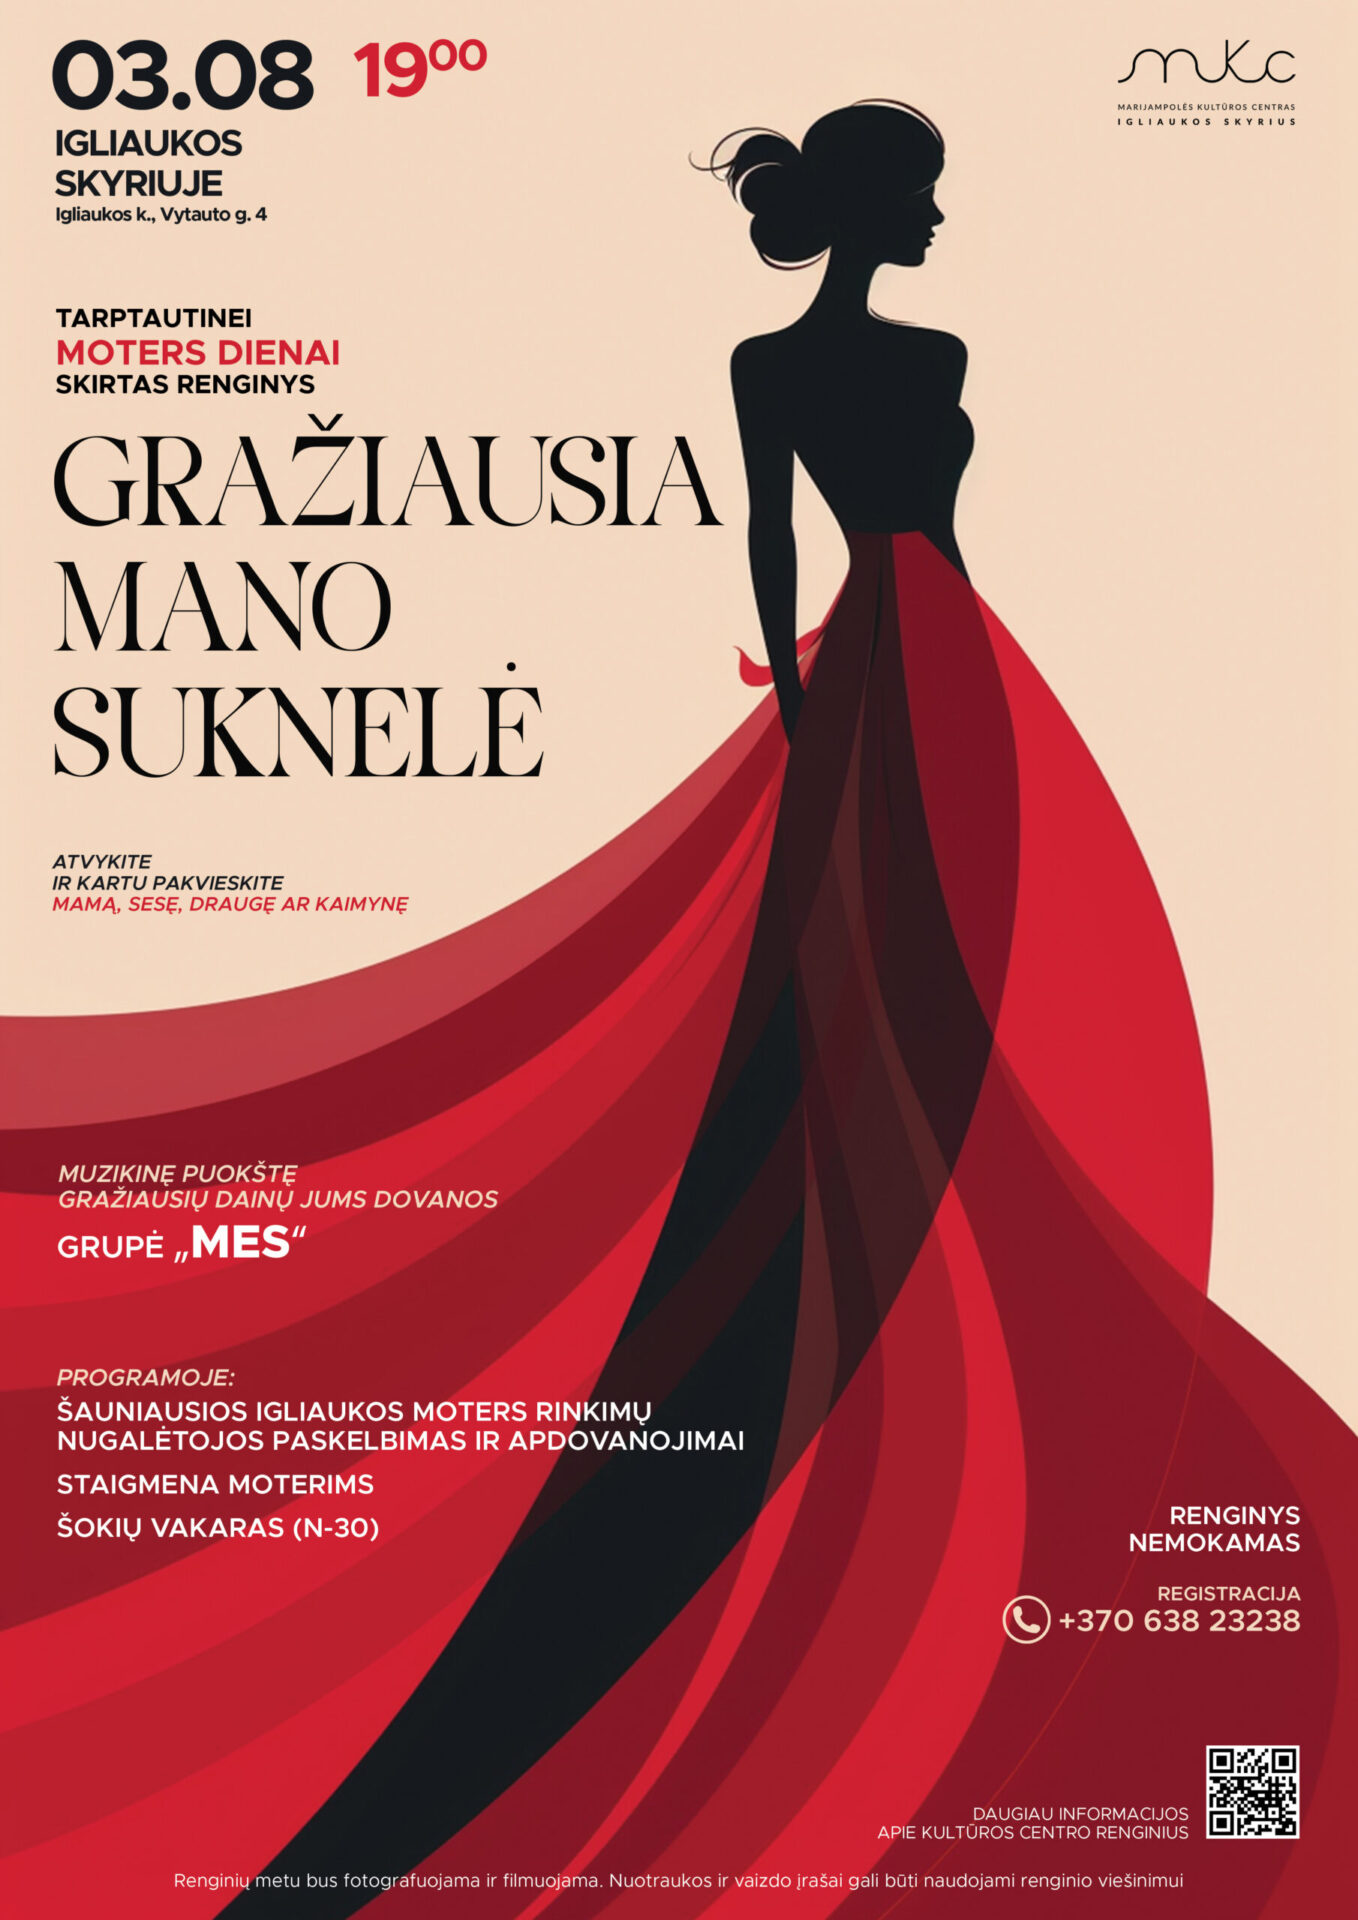 Tarptautinei moters dienai skirtas renginys „Gražiausia mano suknelė” | Igliauka